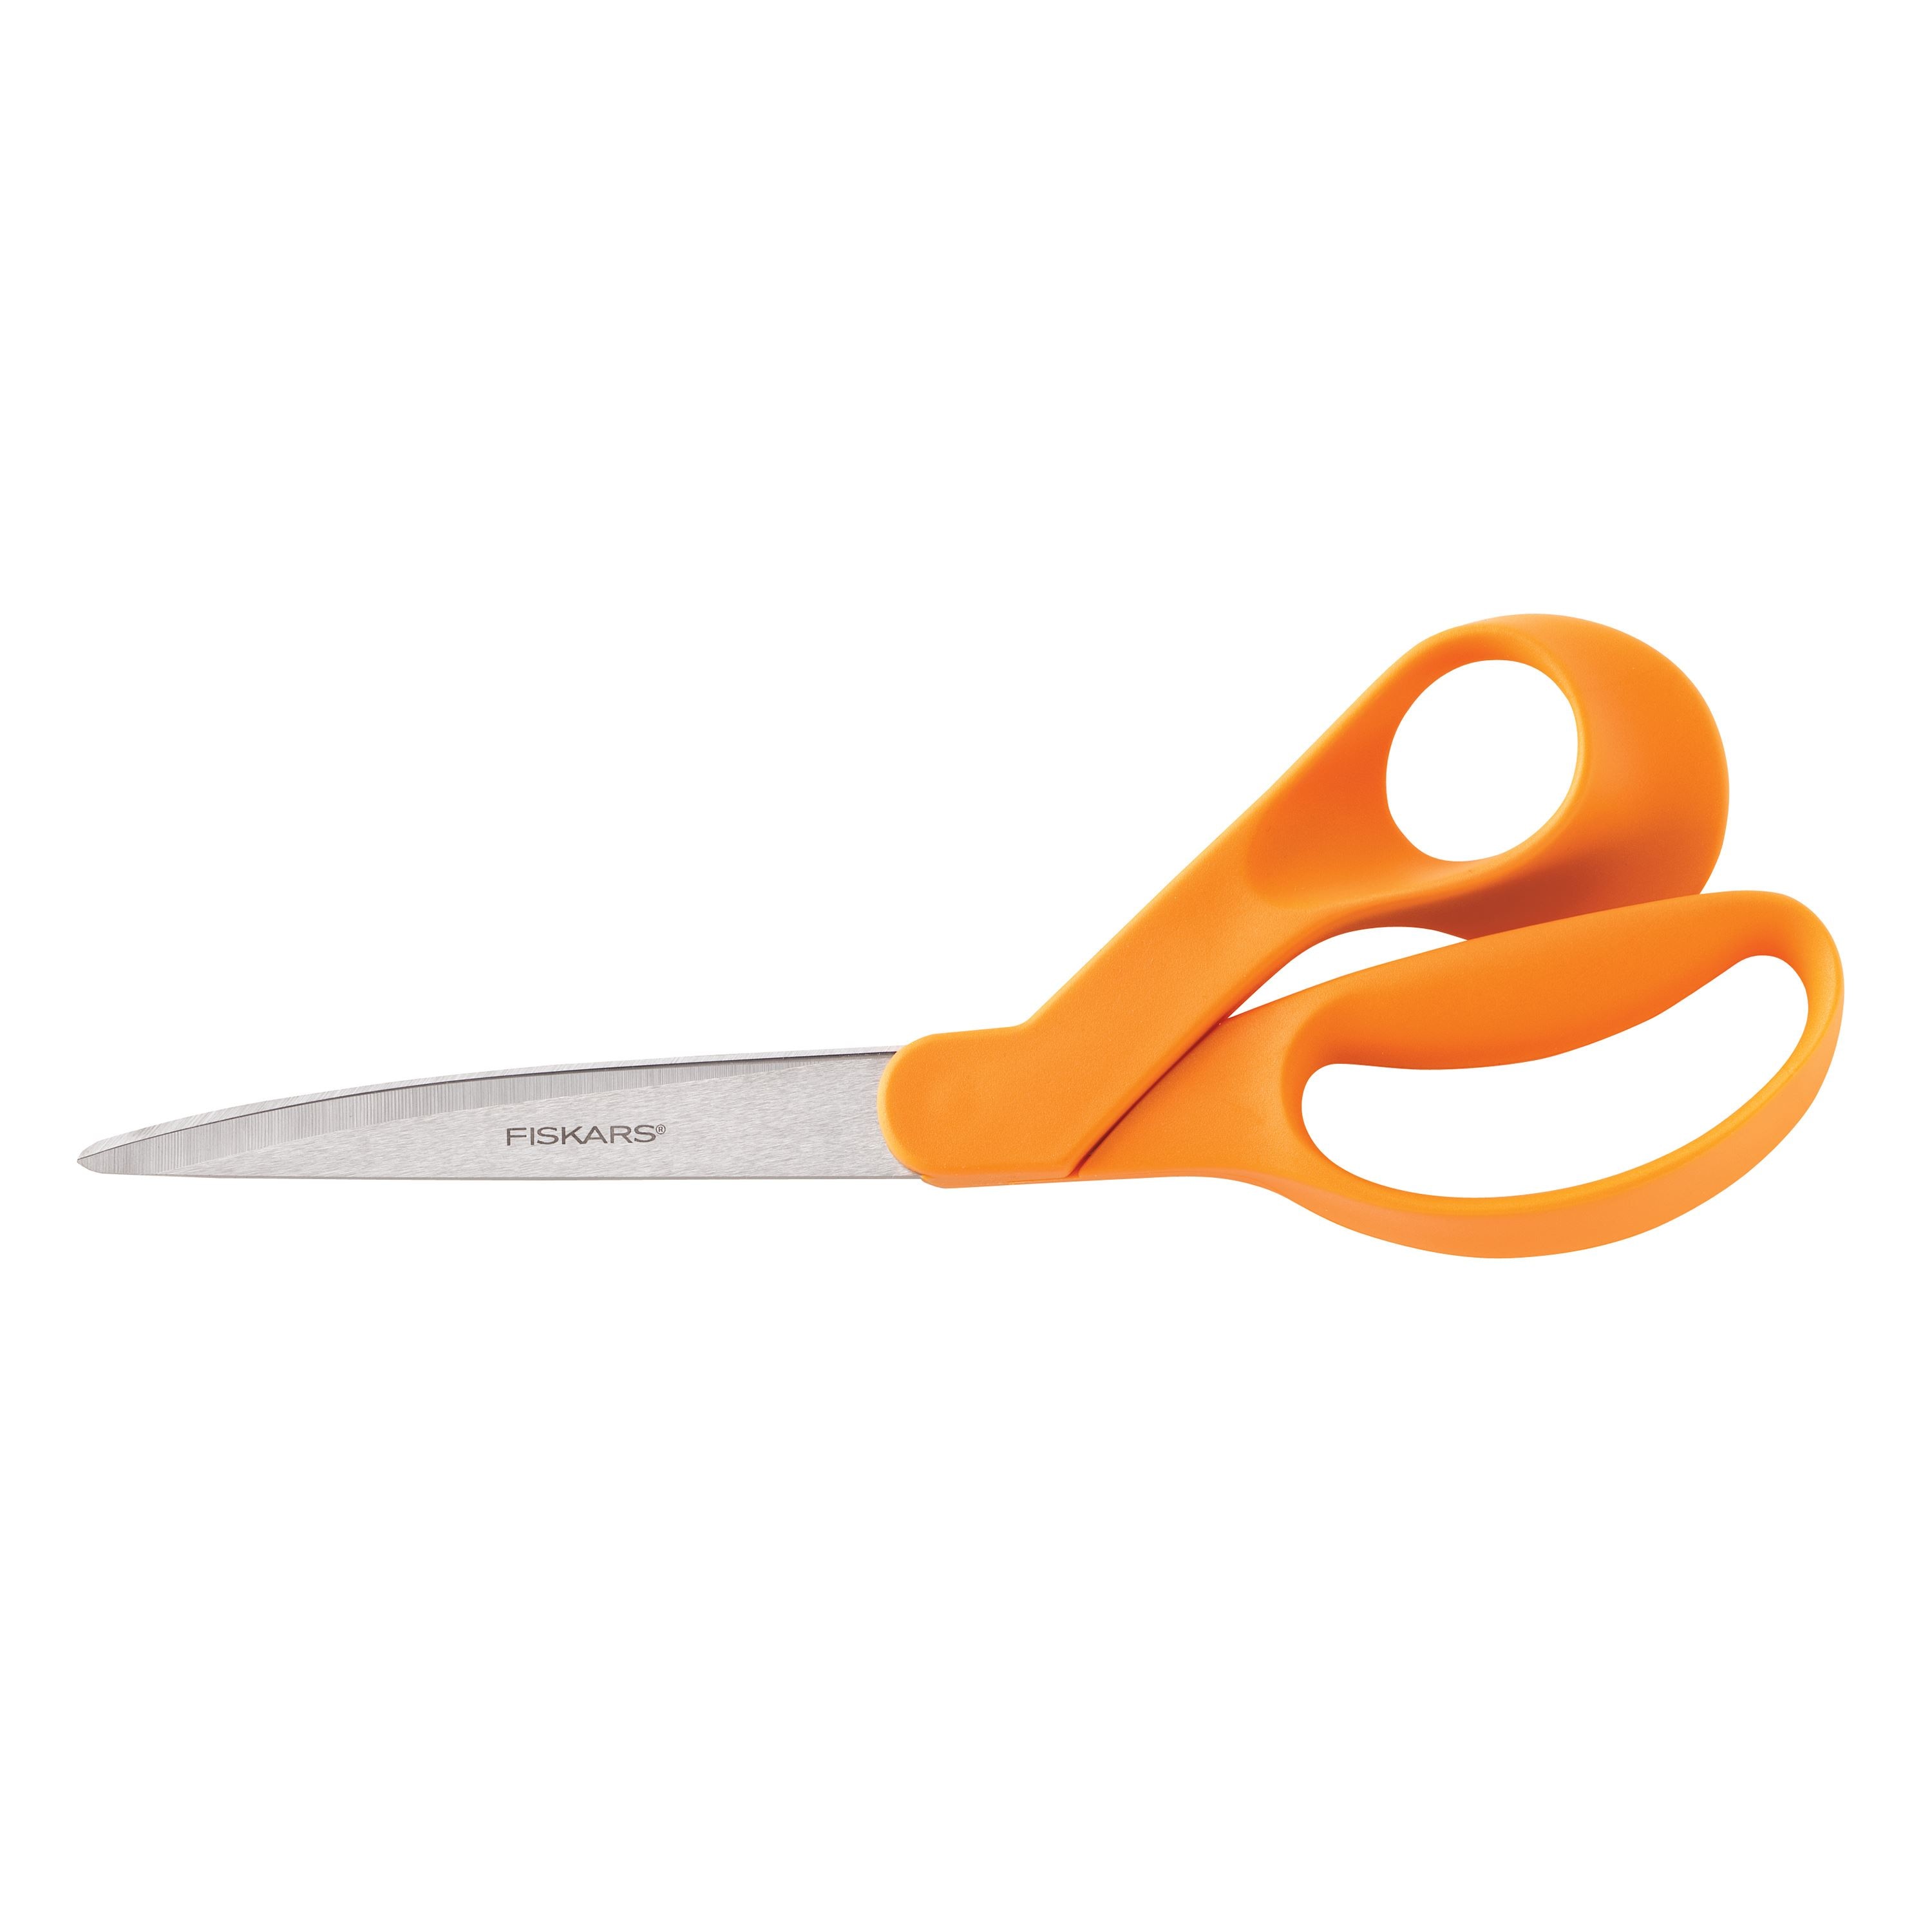 Scissor Sharpener Sewsharp™ Fiskars Handy Size for Left and Right